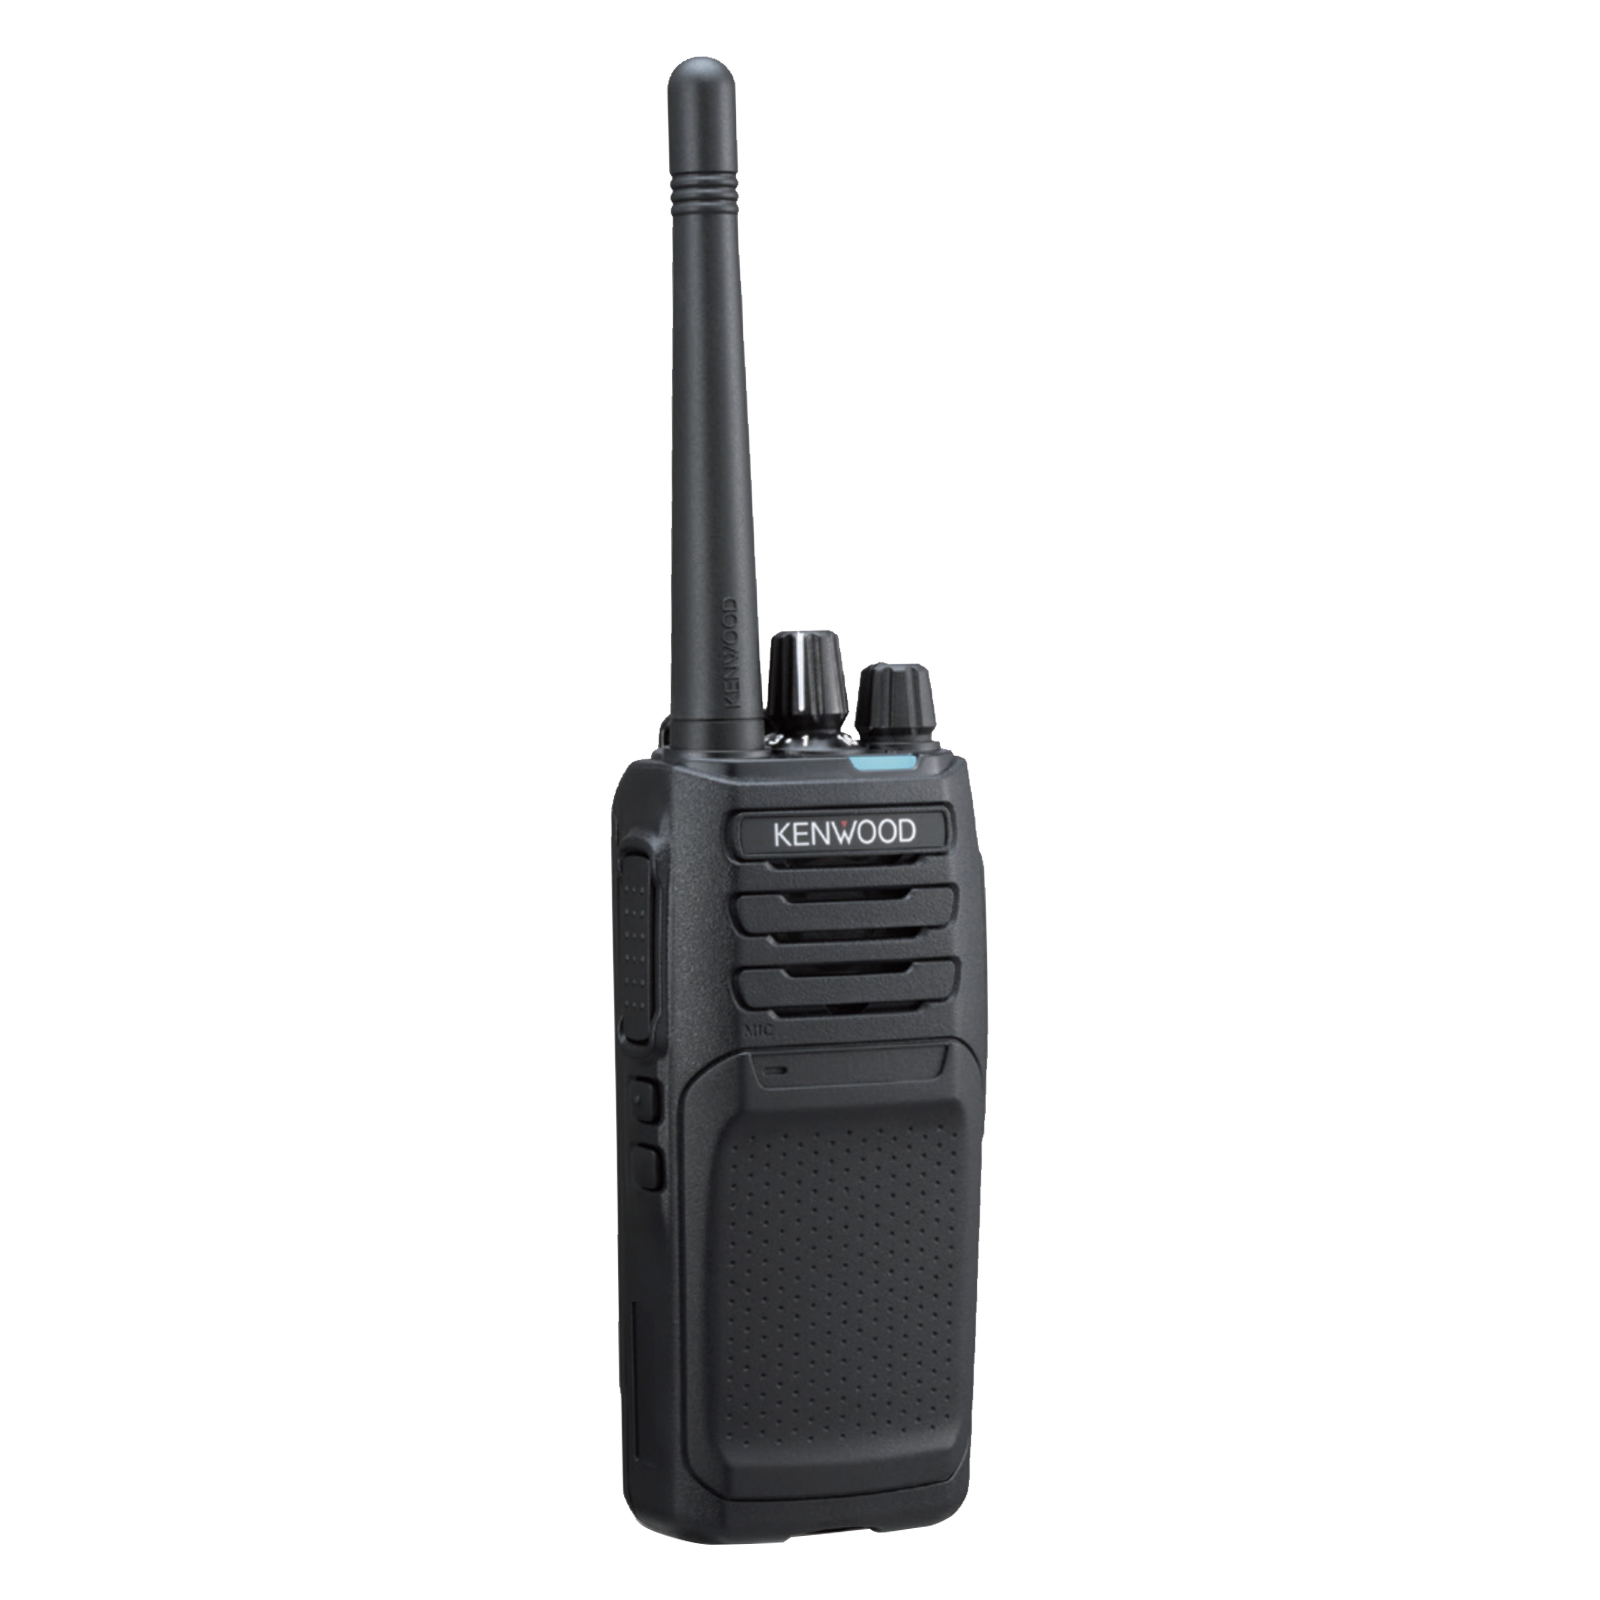 Kenwood Digital Walkie Talkie NX1200 VHF Radio DMR